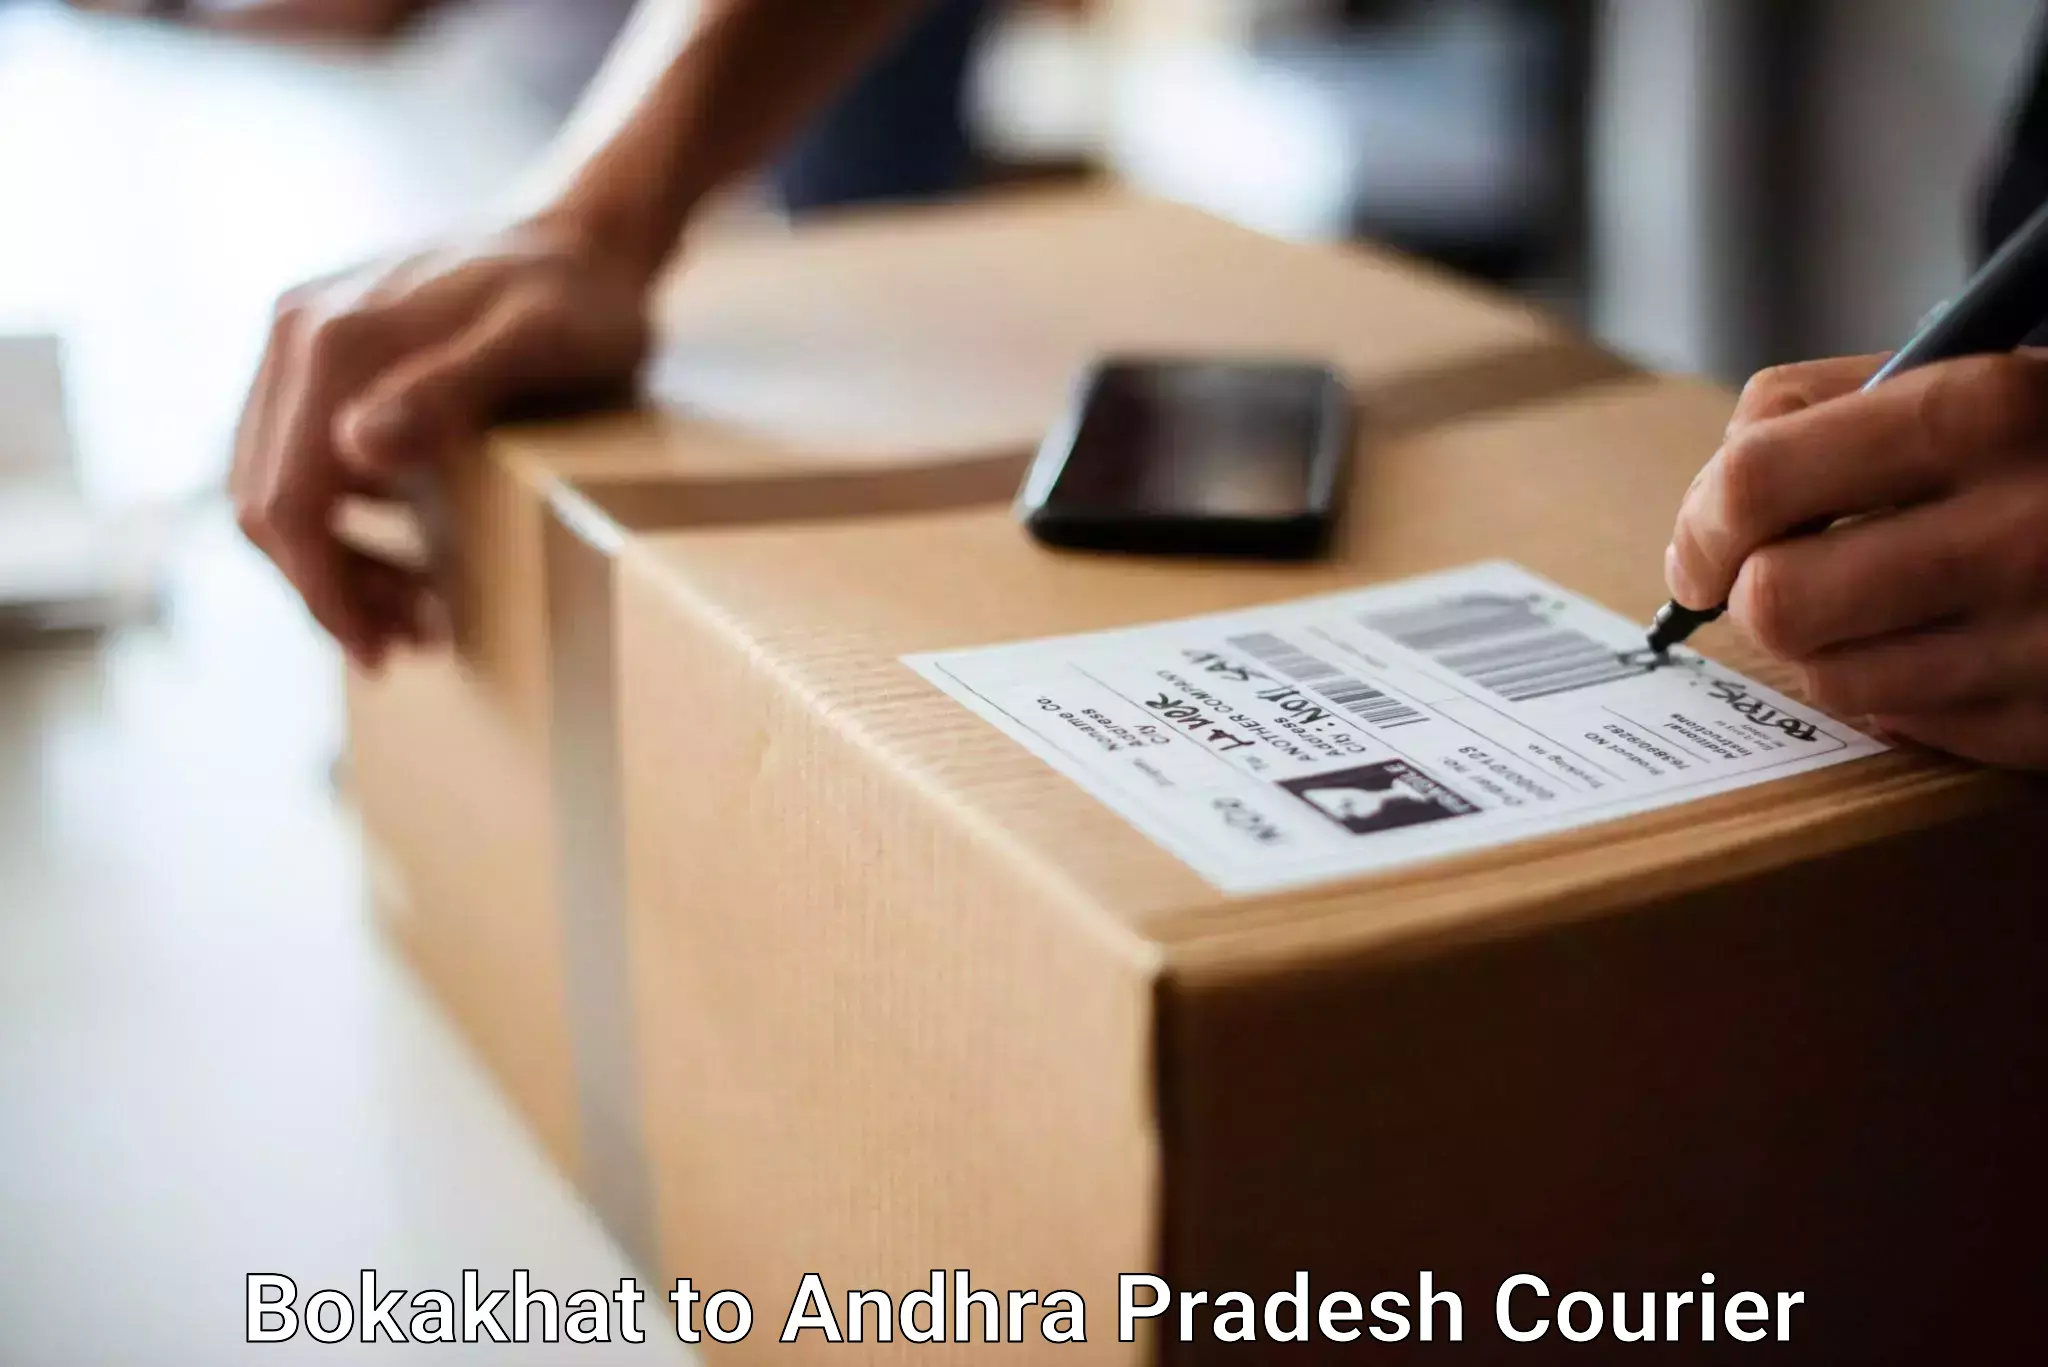 Hassle-free luggage shipping Bokakhat to Gokavaram